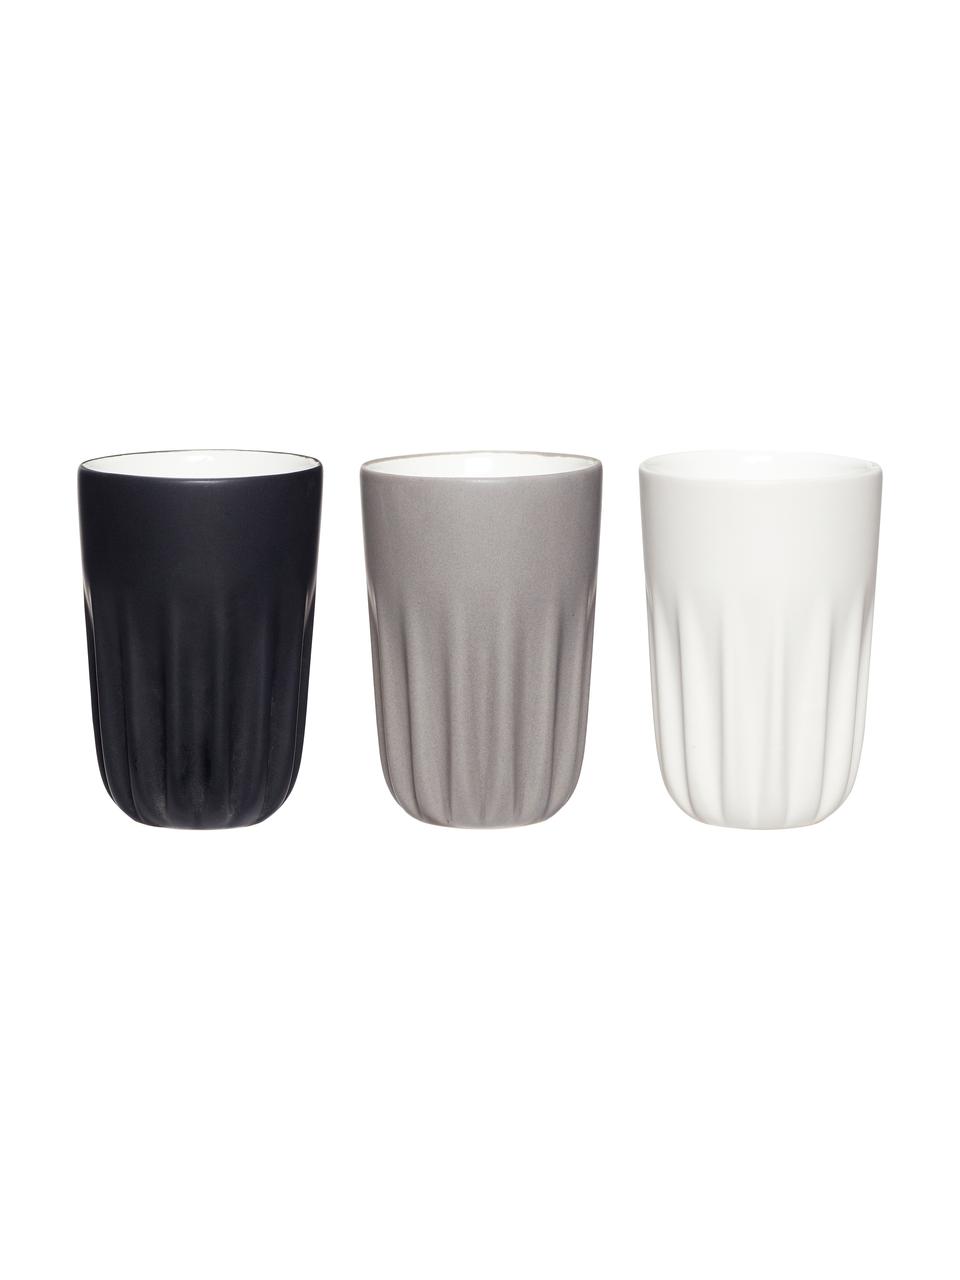 Keramik-Becher Erlang, 3er-Set, Keramik, Weiss, Schwarz, Grau, Ø 8 x H 12 cm